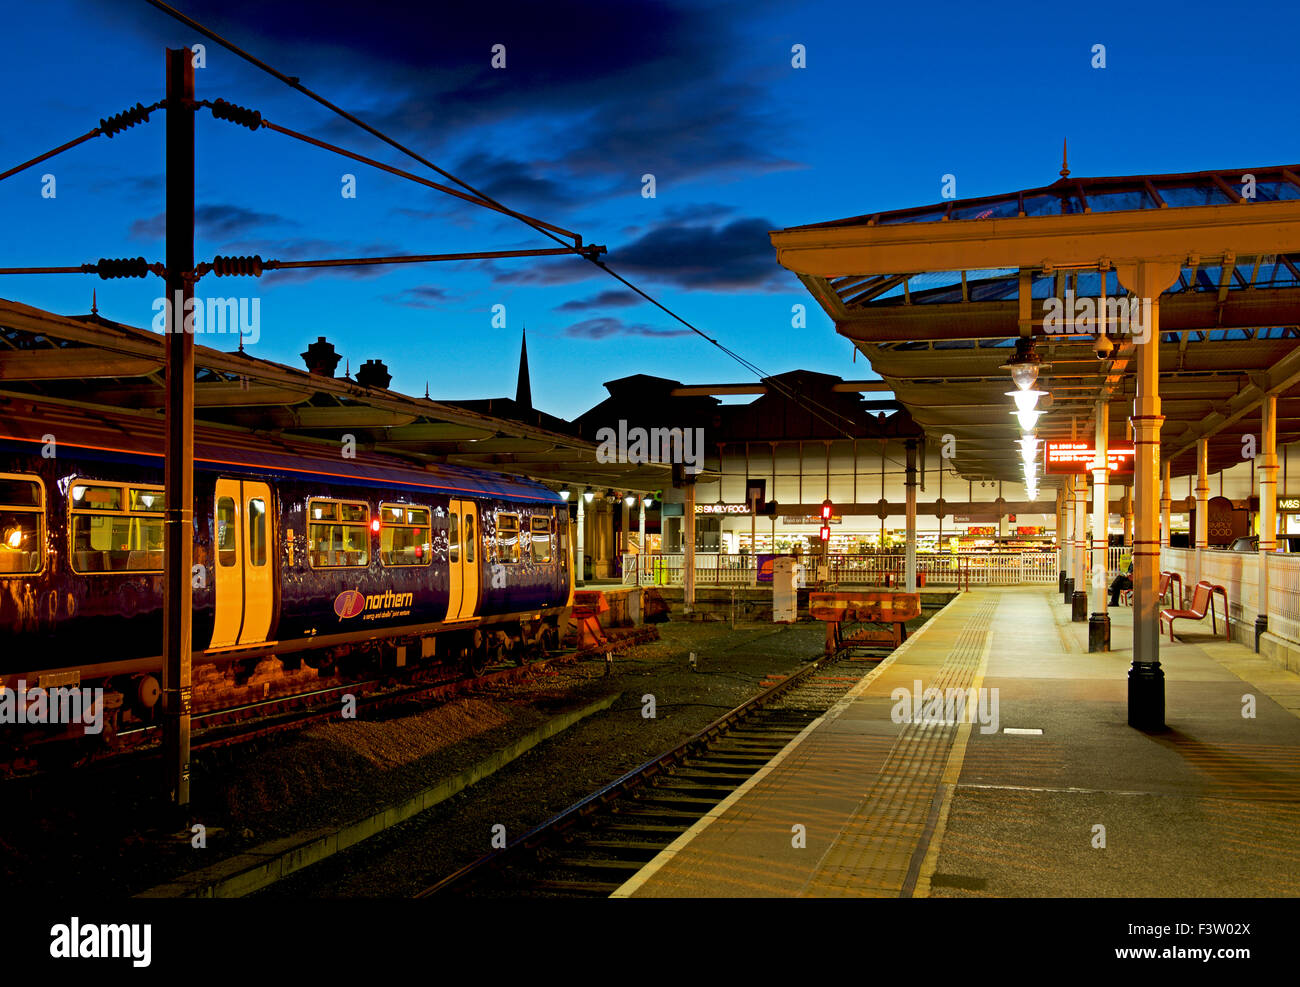 Railway station at night, Ilkley, West Yorkshire, England UK Stock Photo